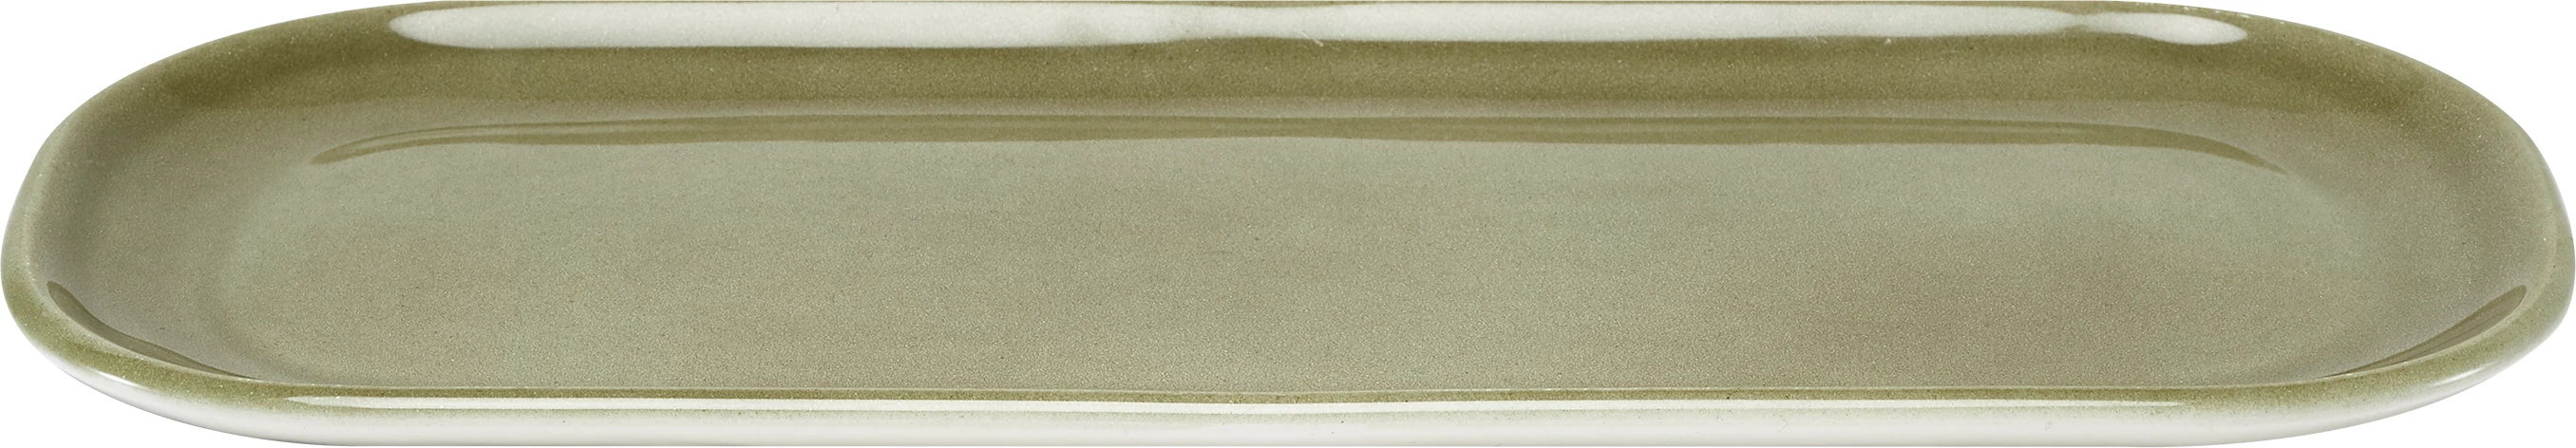 Figgjo Pax tallerken, oval, oliven, 30 x 13 cm